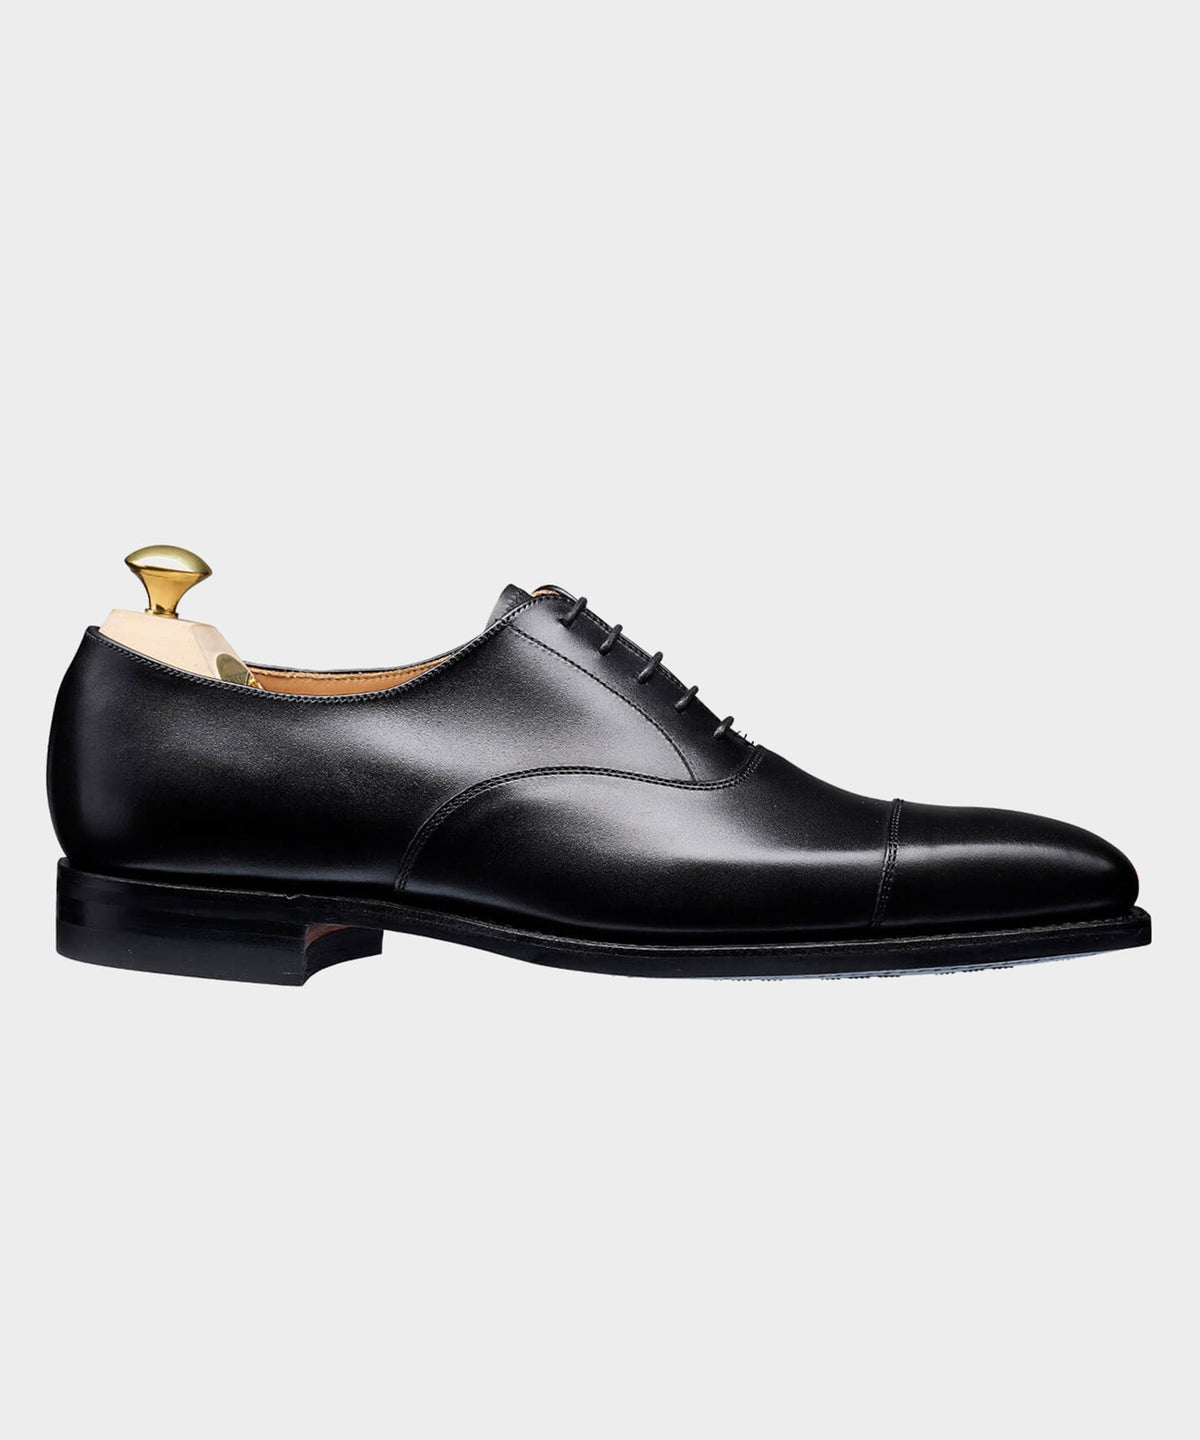 Crockett & Jones Hallam Cap-toe Shoe in Black